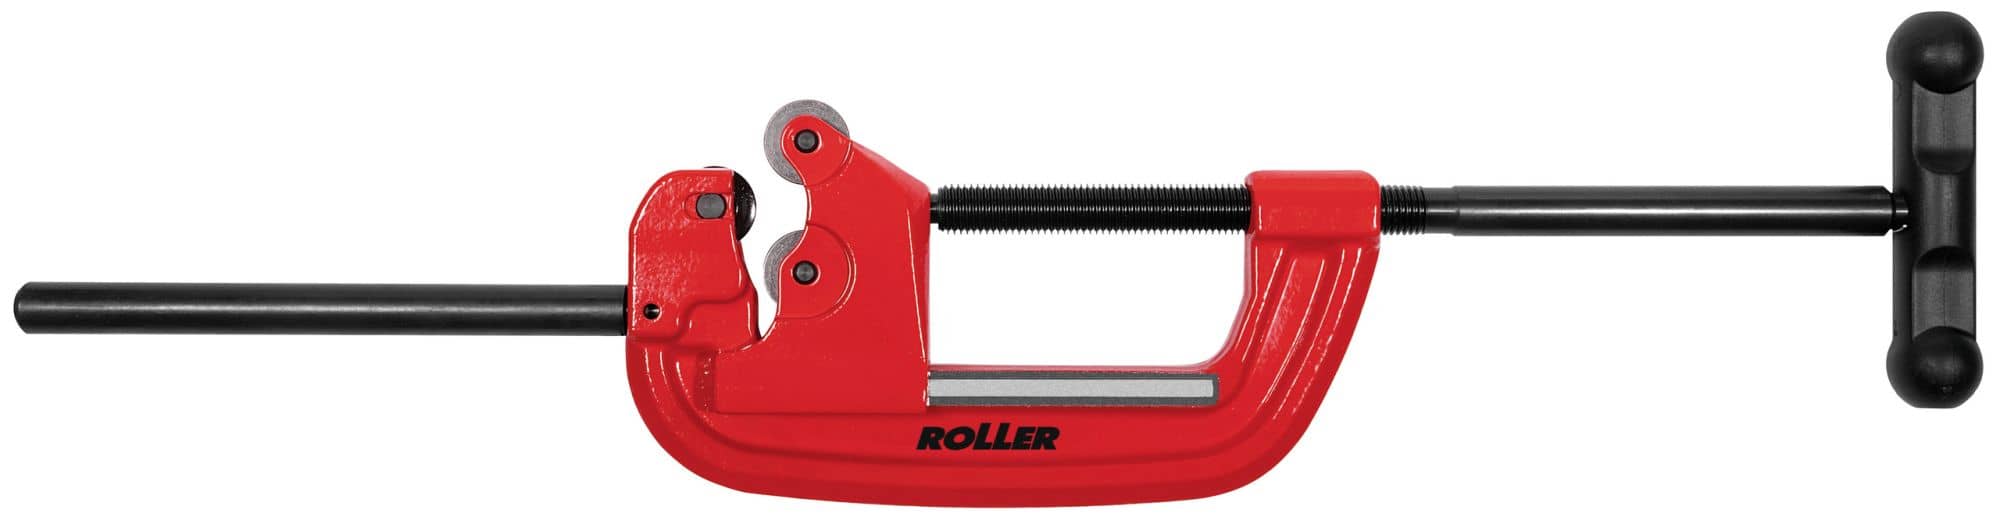 ROLLER'S Corso St 1 1/4-4 Zoll - Qualitäts-Rohrabschneider Ø 1 1/4-2 Zoll, 30–115 mm